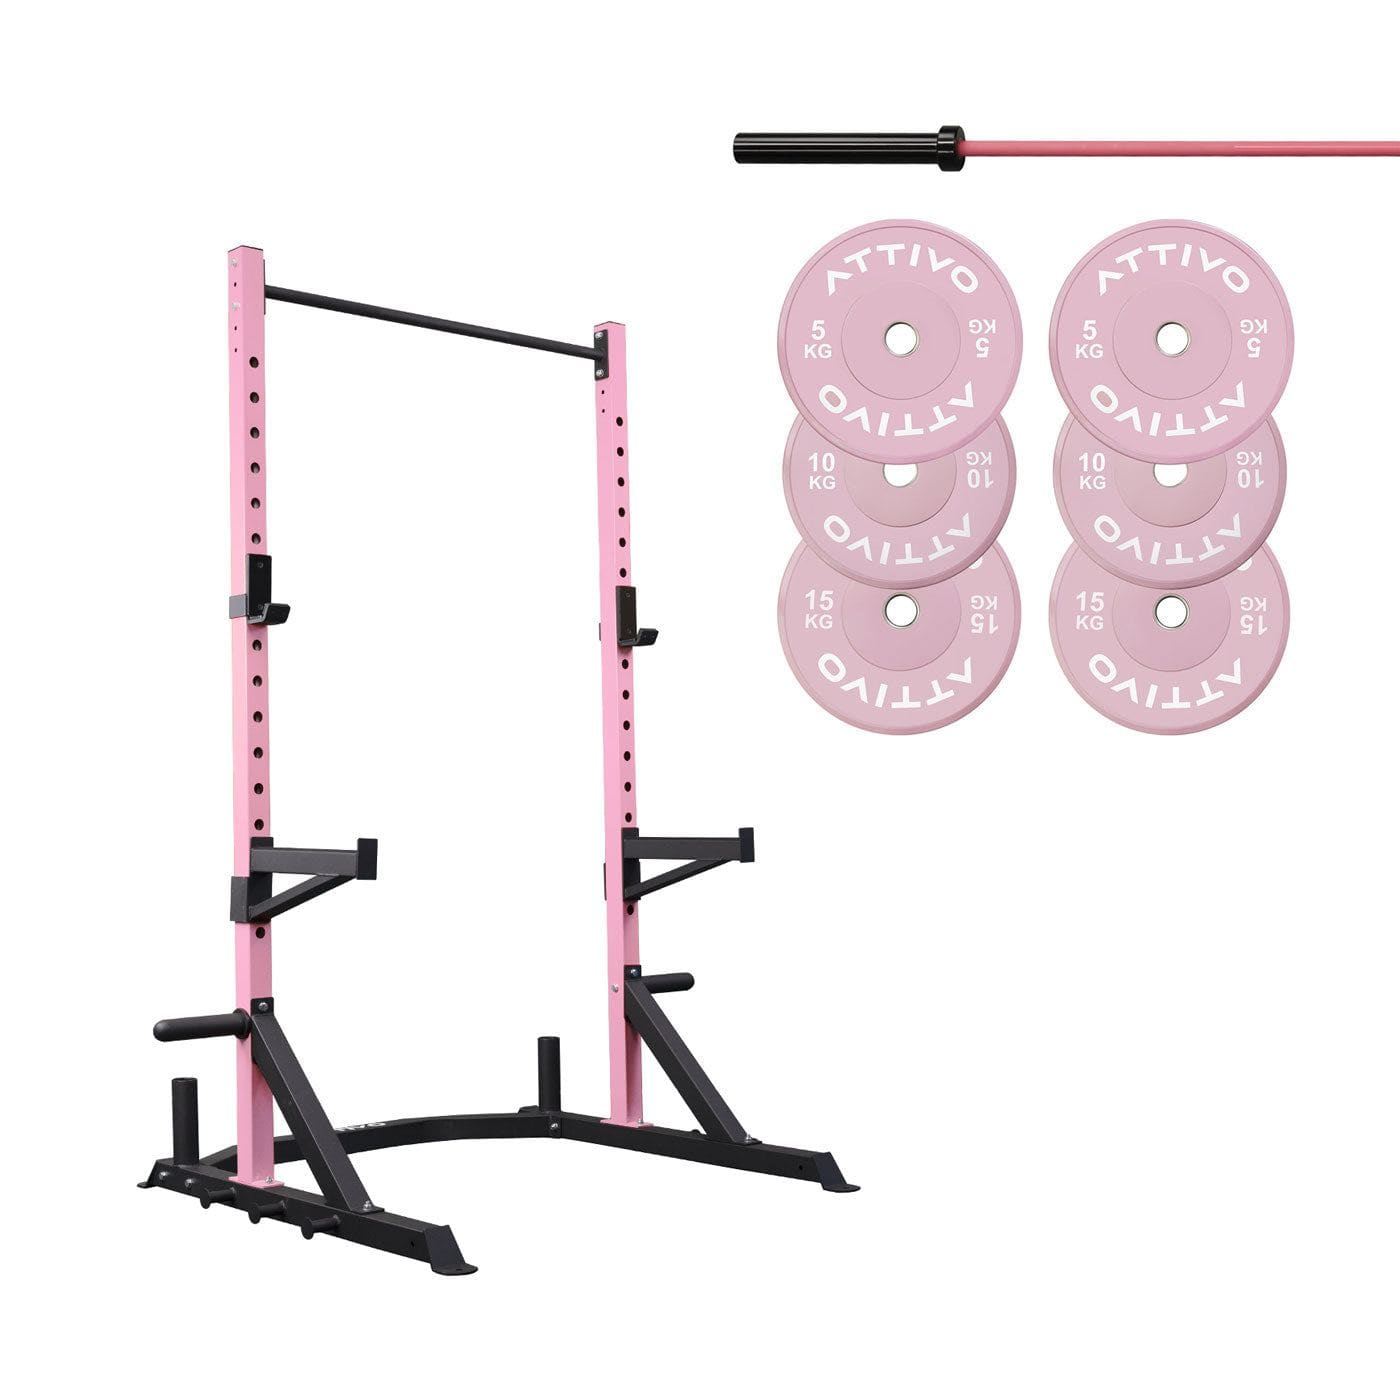 Half Power Rack Garage Gym Package - Pink